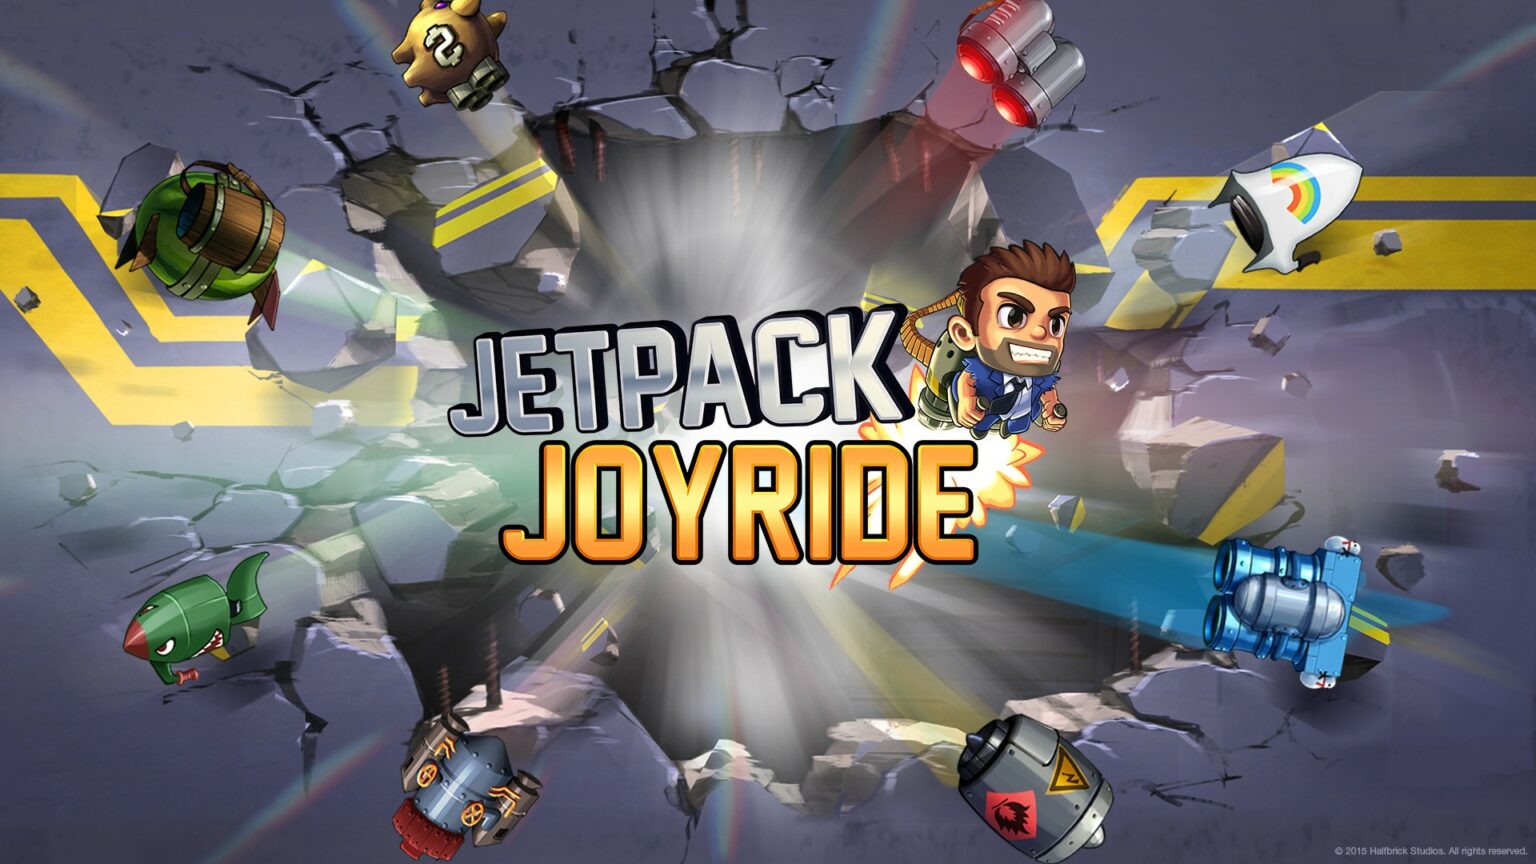 jetpack joyride mod apk download